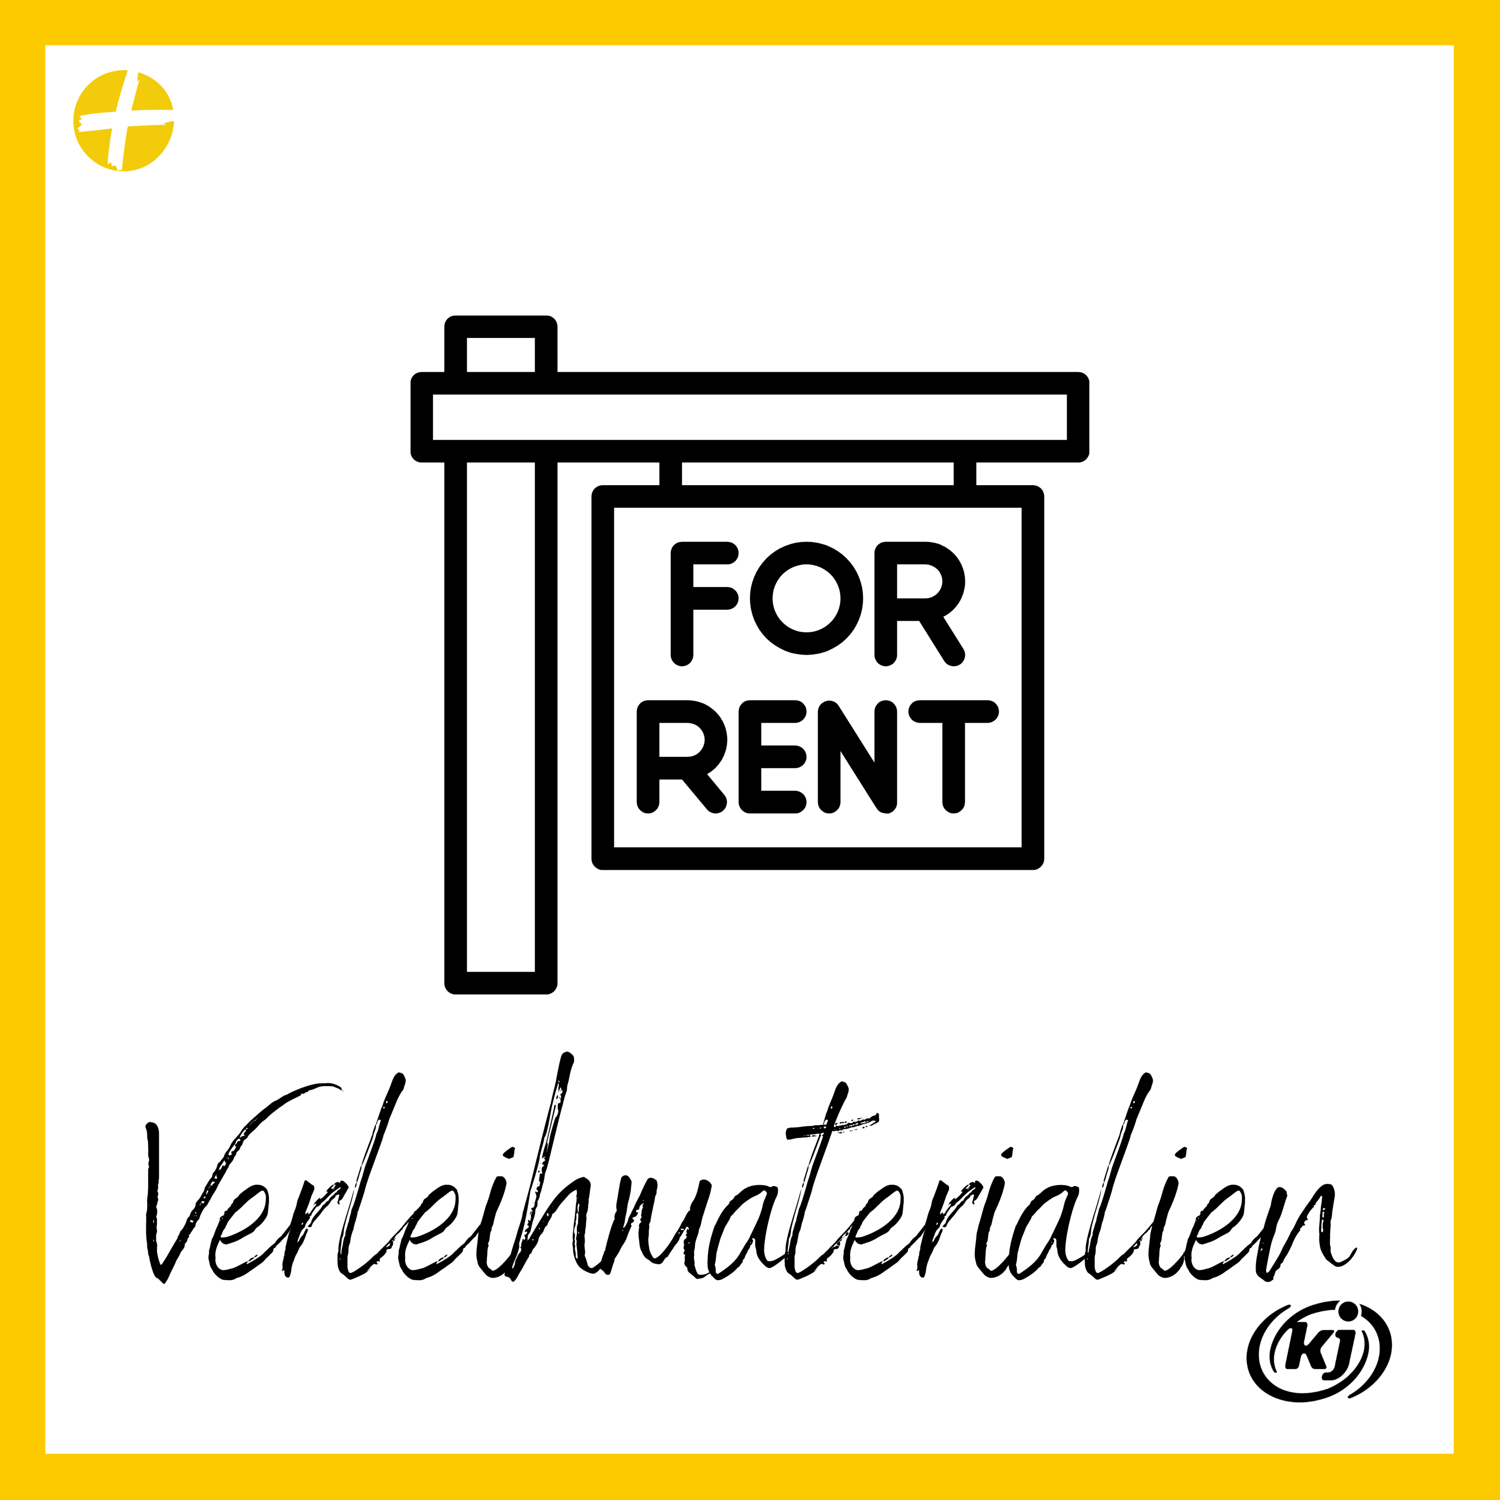 Ein Schild auf dem 'for rent' geschrieben steht. Am unteren Bildrand steht in Schreibschrift 'Verleihmaterialien' geschrieben